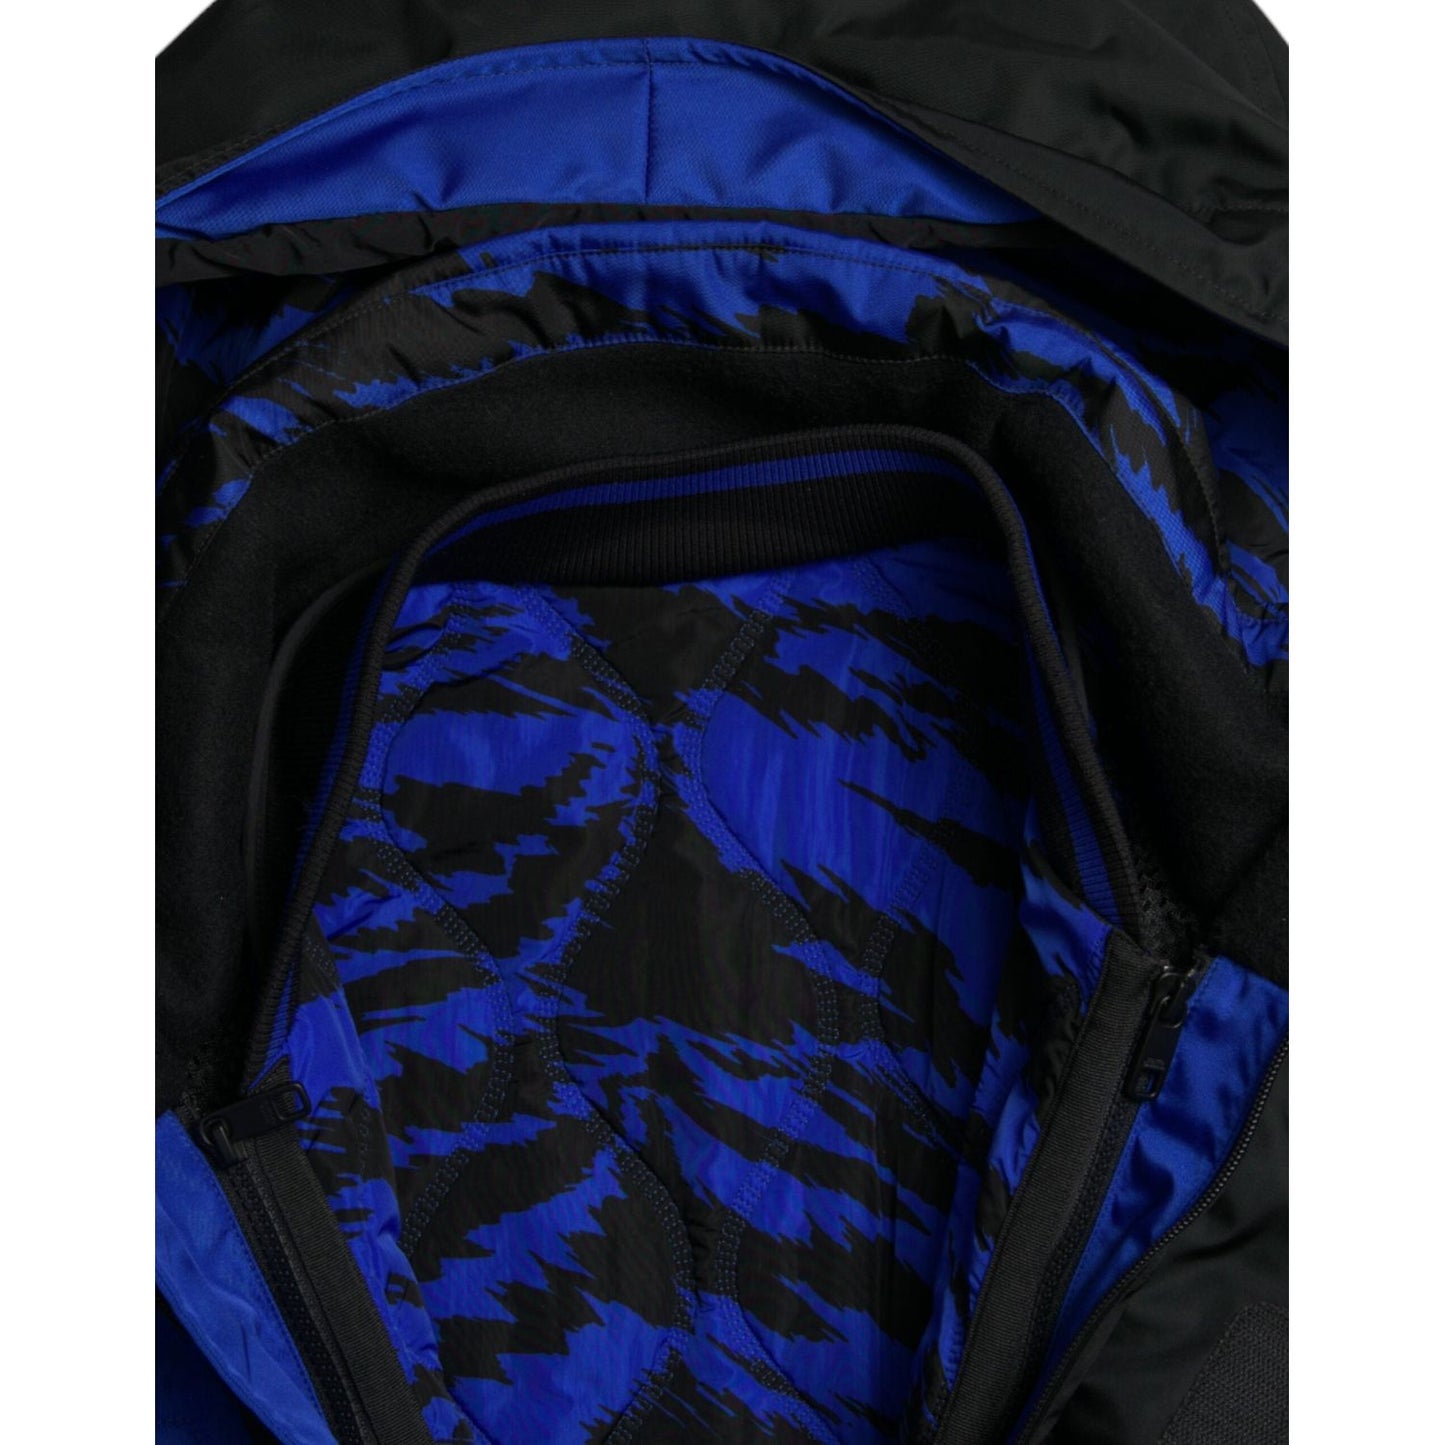 Dolce & Gabbana Reversible Nylon Windbreaker With Hood black-blue-hooded-windbreaker-coat-jacket